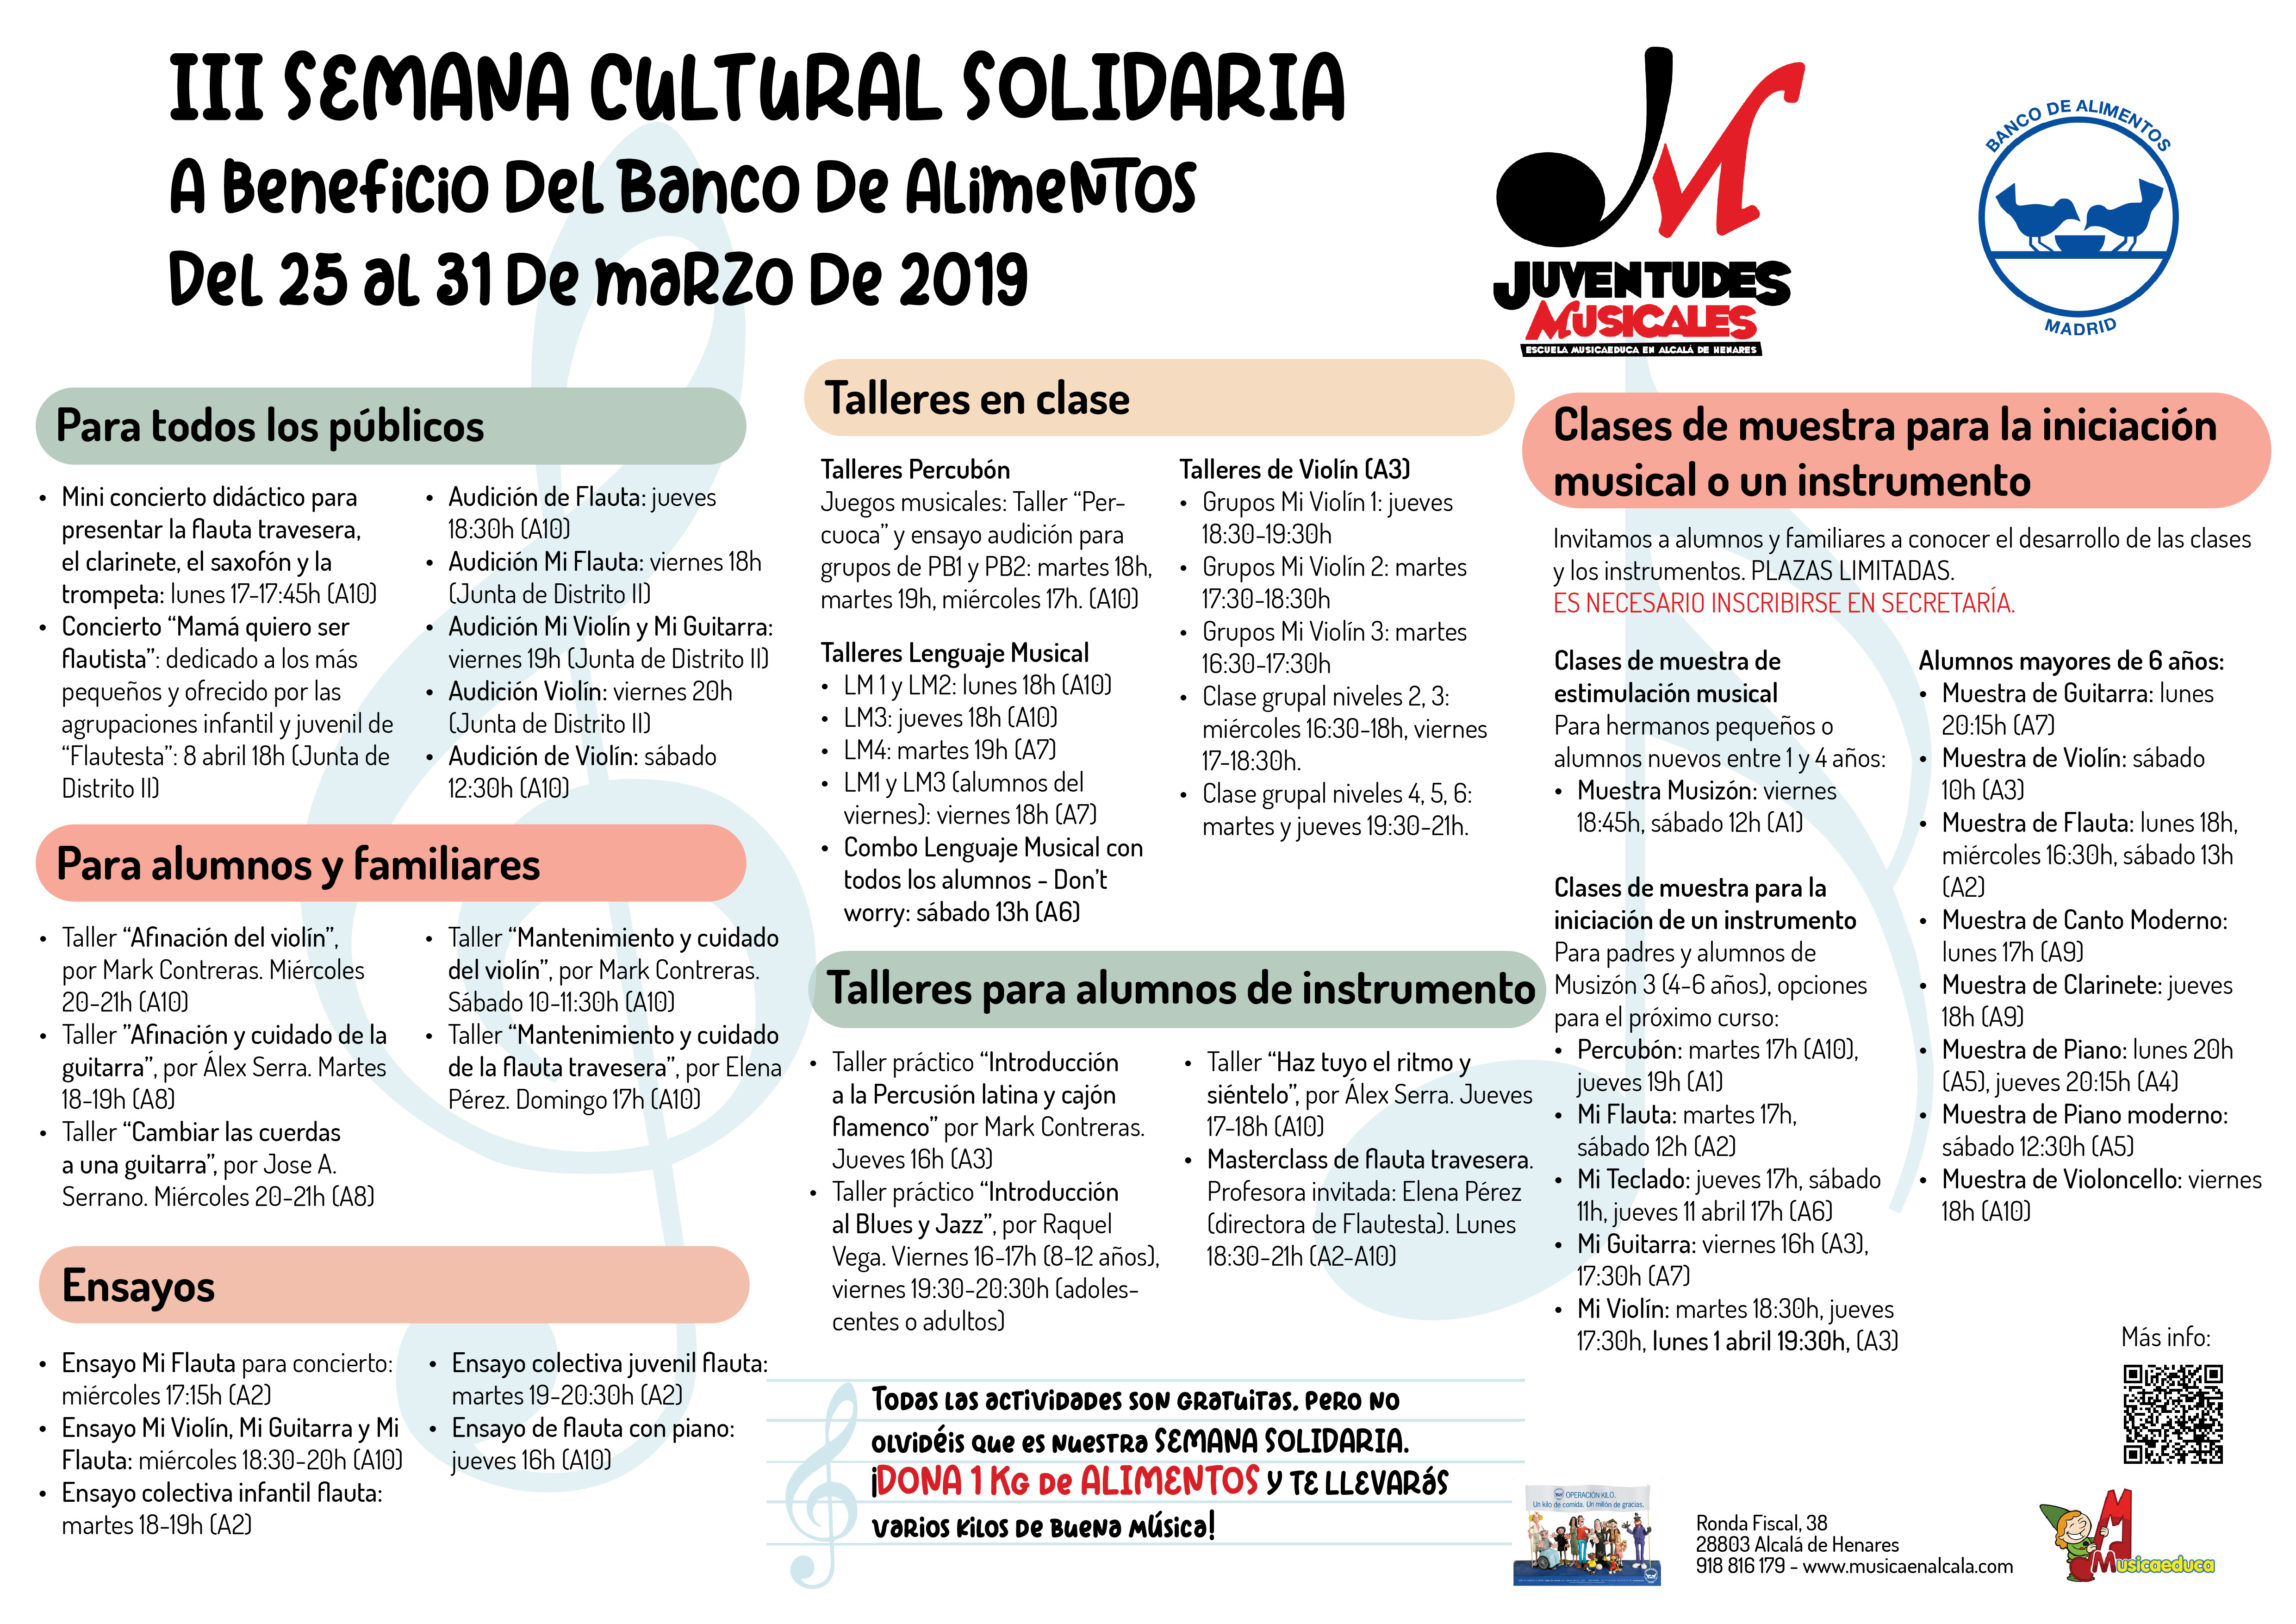 III semana cultural solidaria final